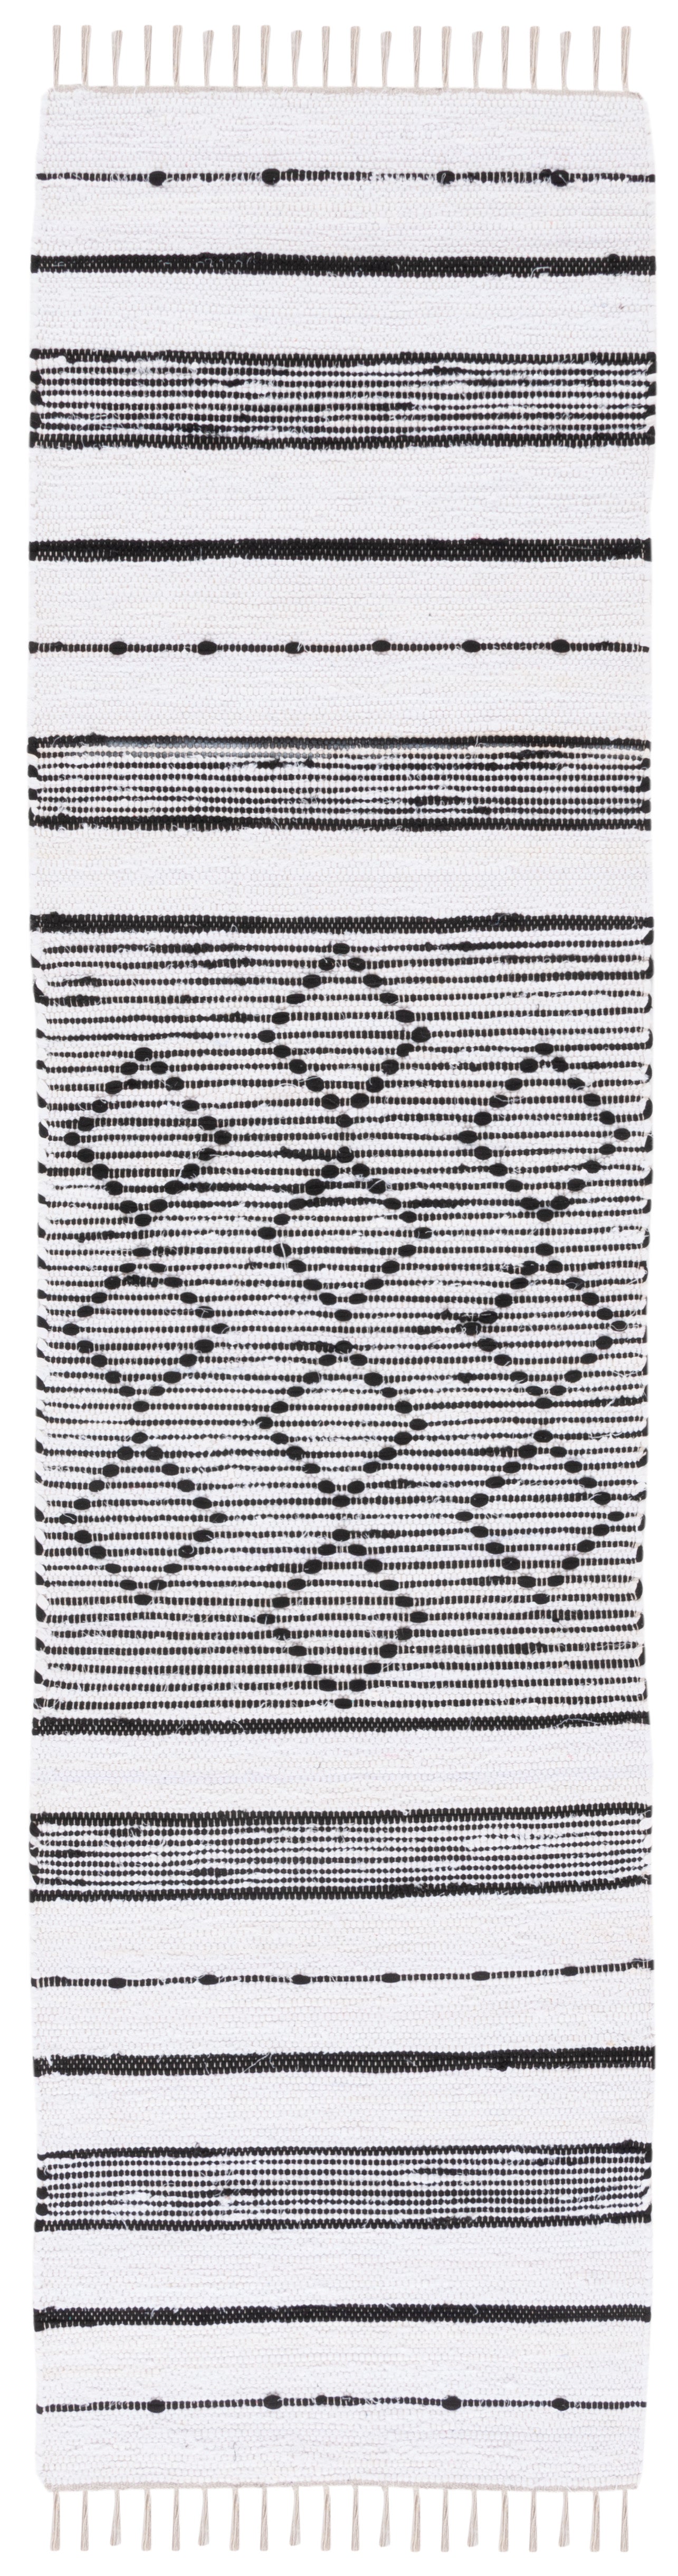 Safavieh Striped Kilim Stk203A Ivory/Black Area Rug